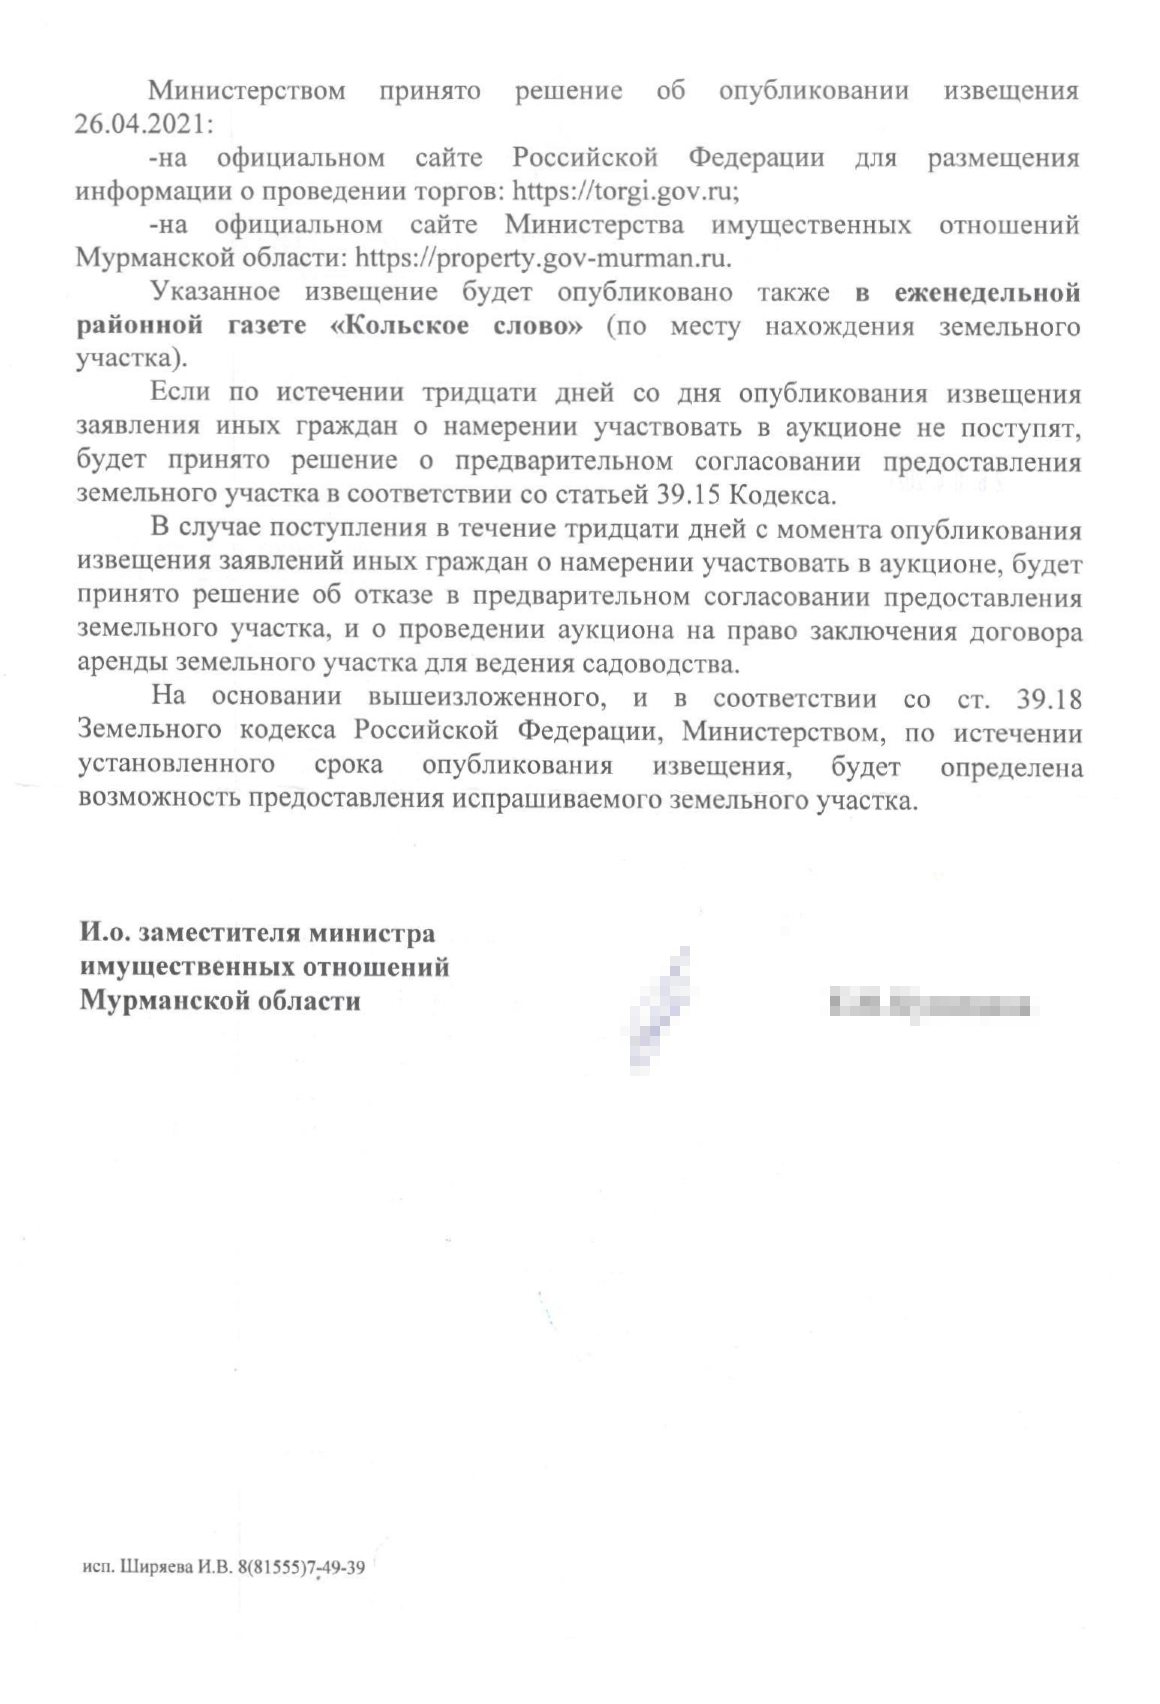 Такое извещение мы получили от министерства имущественных отношений Мурманской области после подачи заявления на предварительное согласование аренды земельного участка